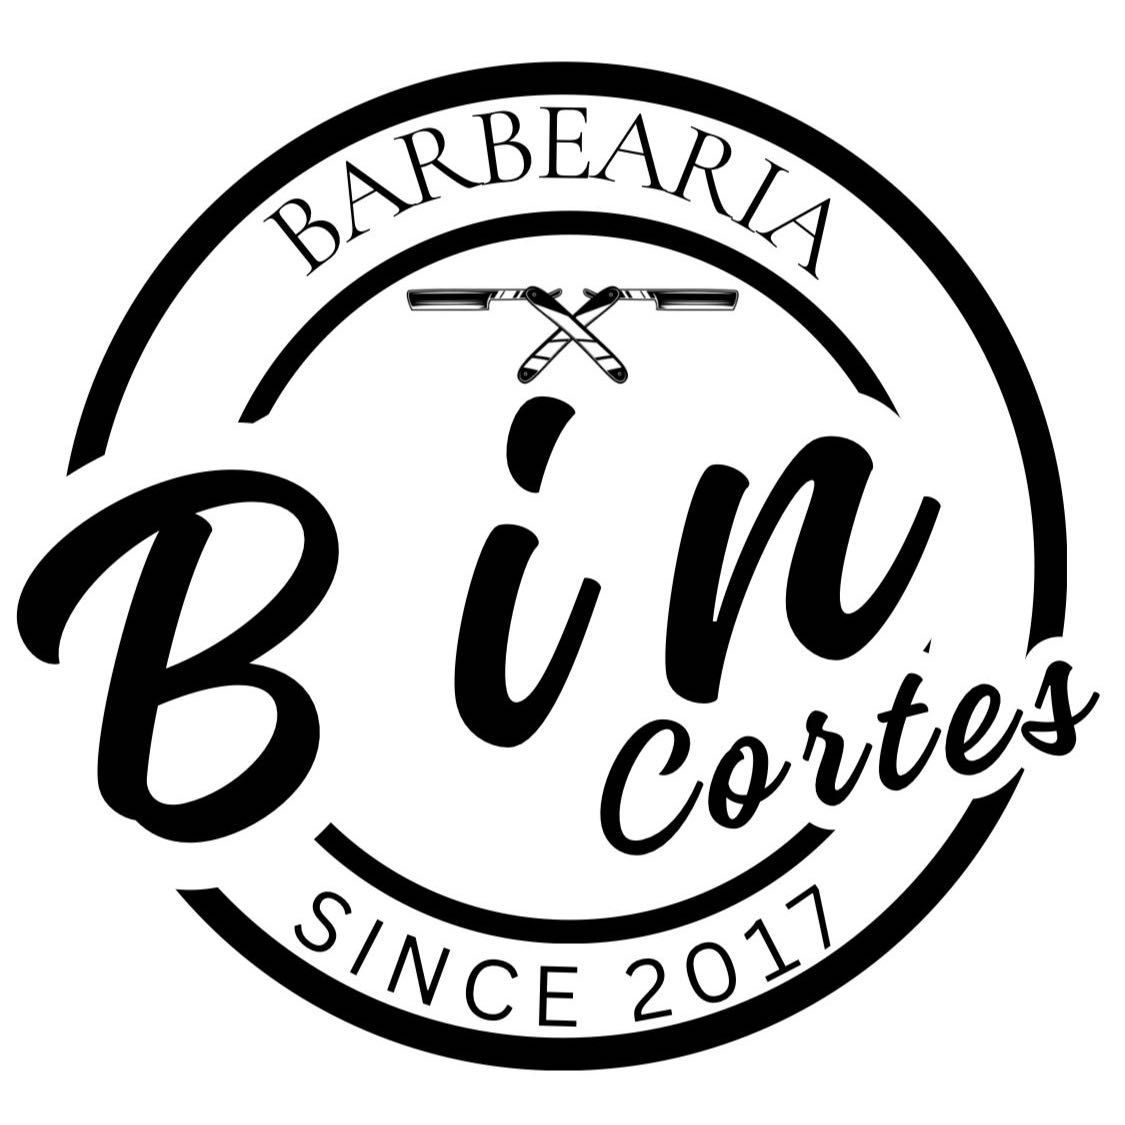 Barbearia Bin cortes, Rua Montevideu, 240, 06449-300, Barueri